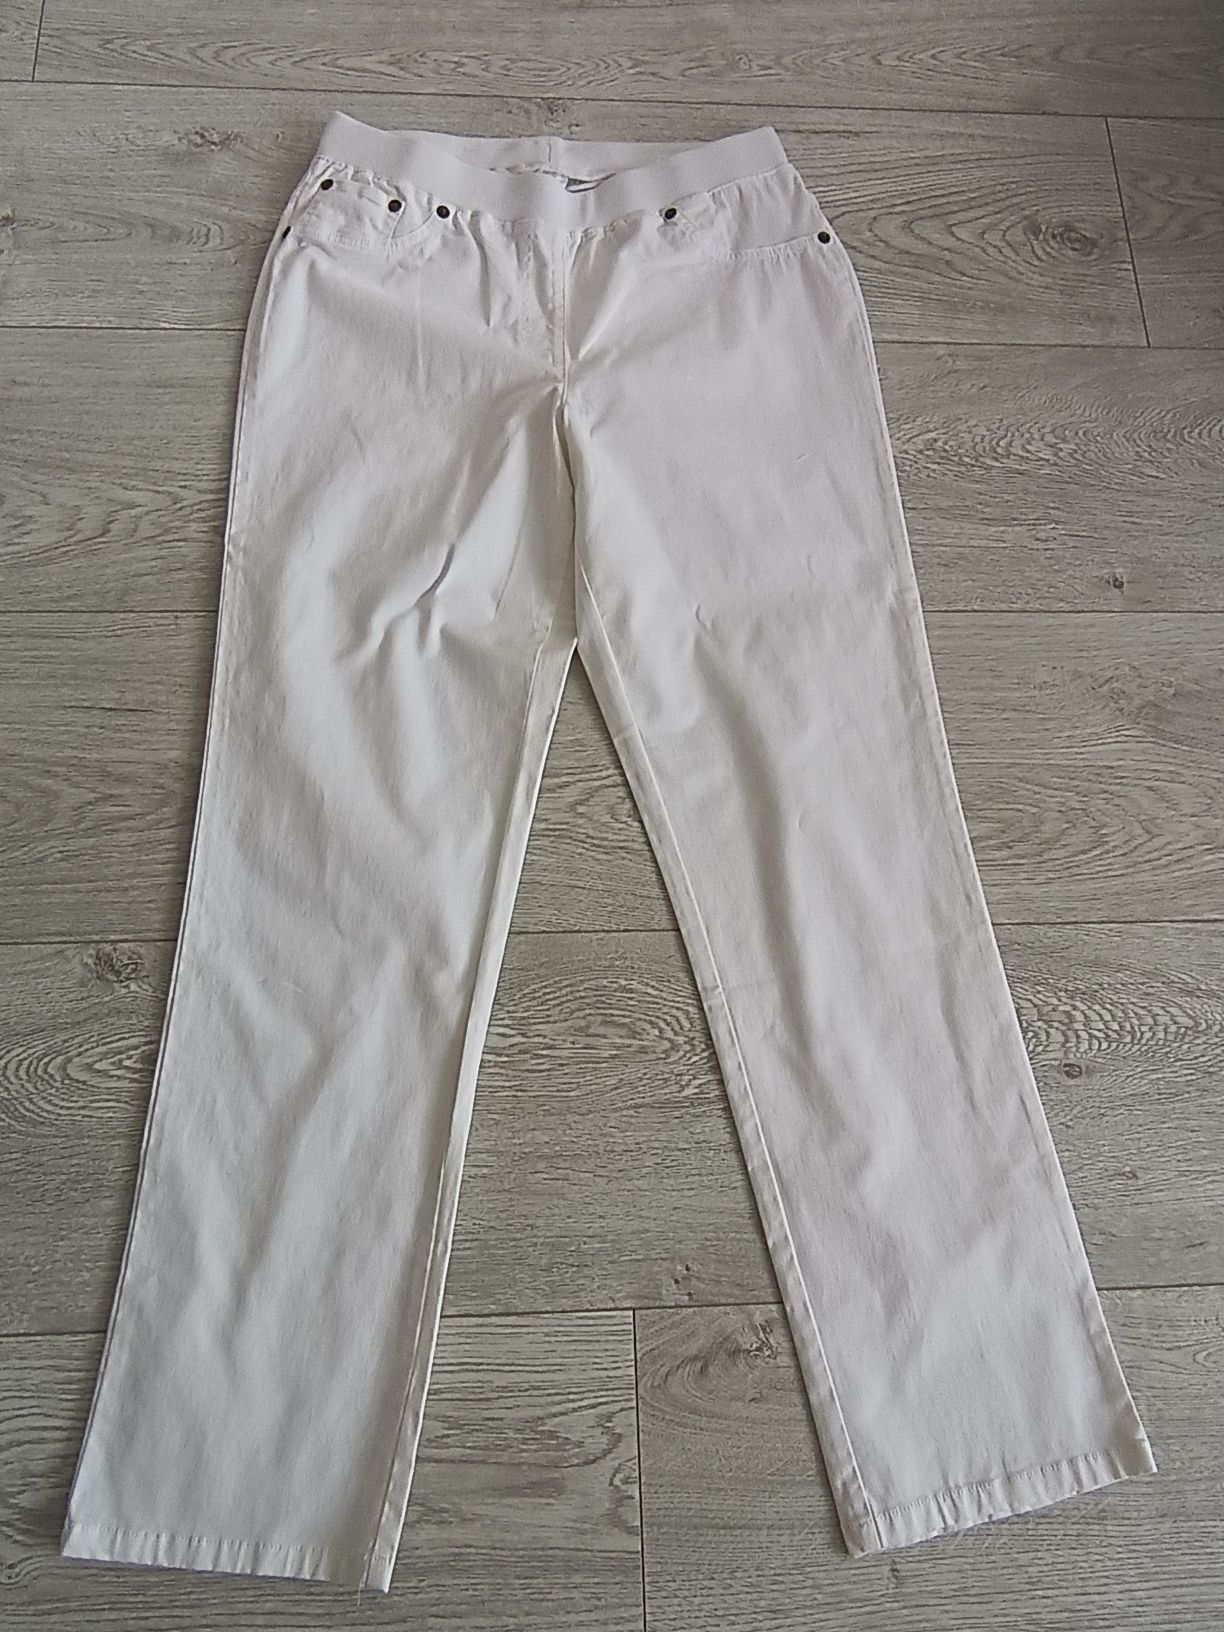 Spodnie damskie białe nowe bez metki